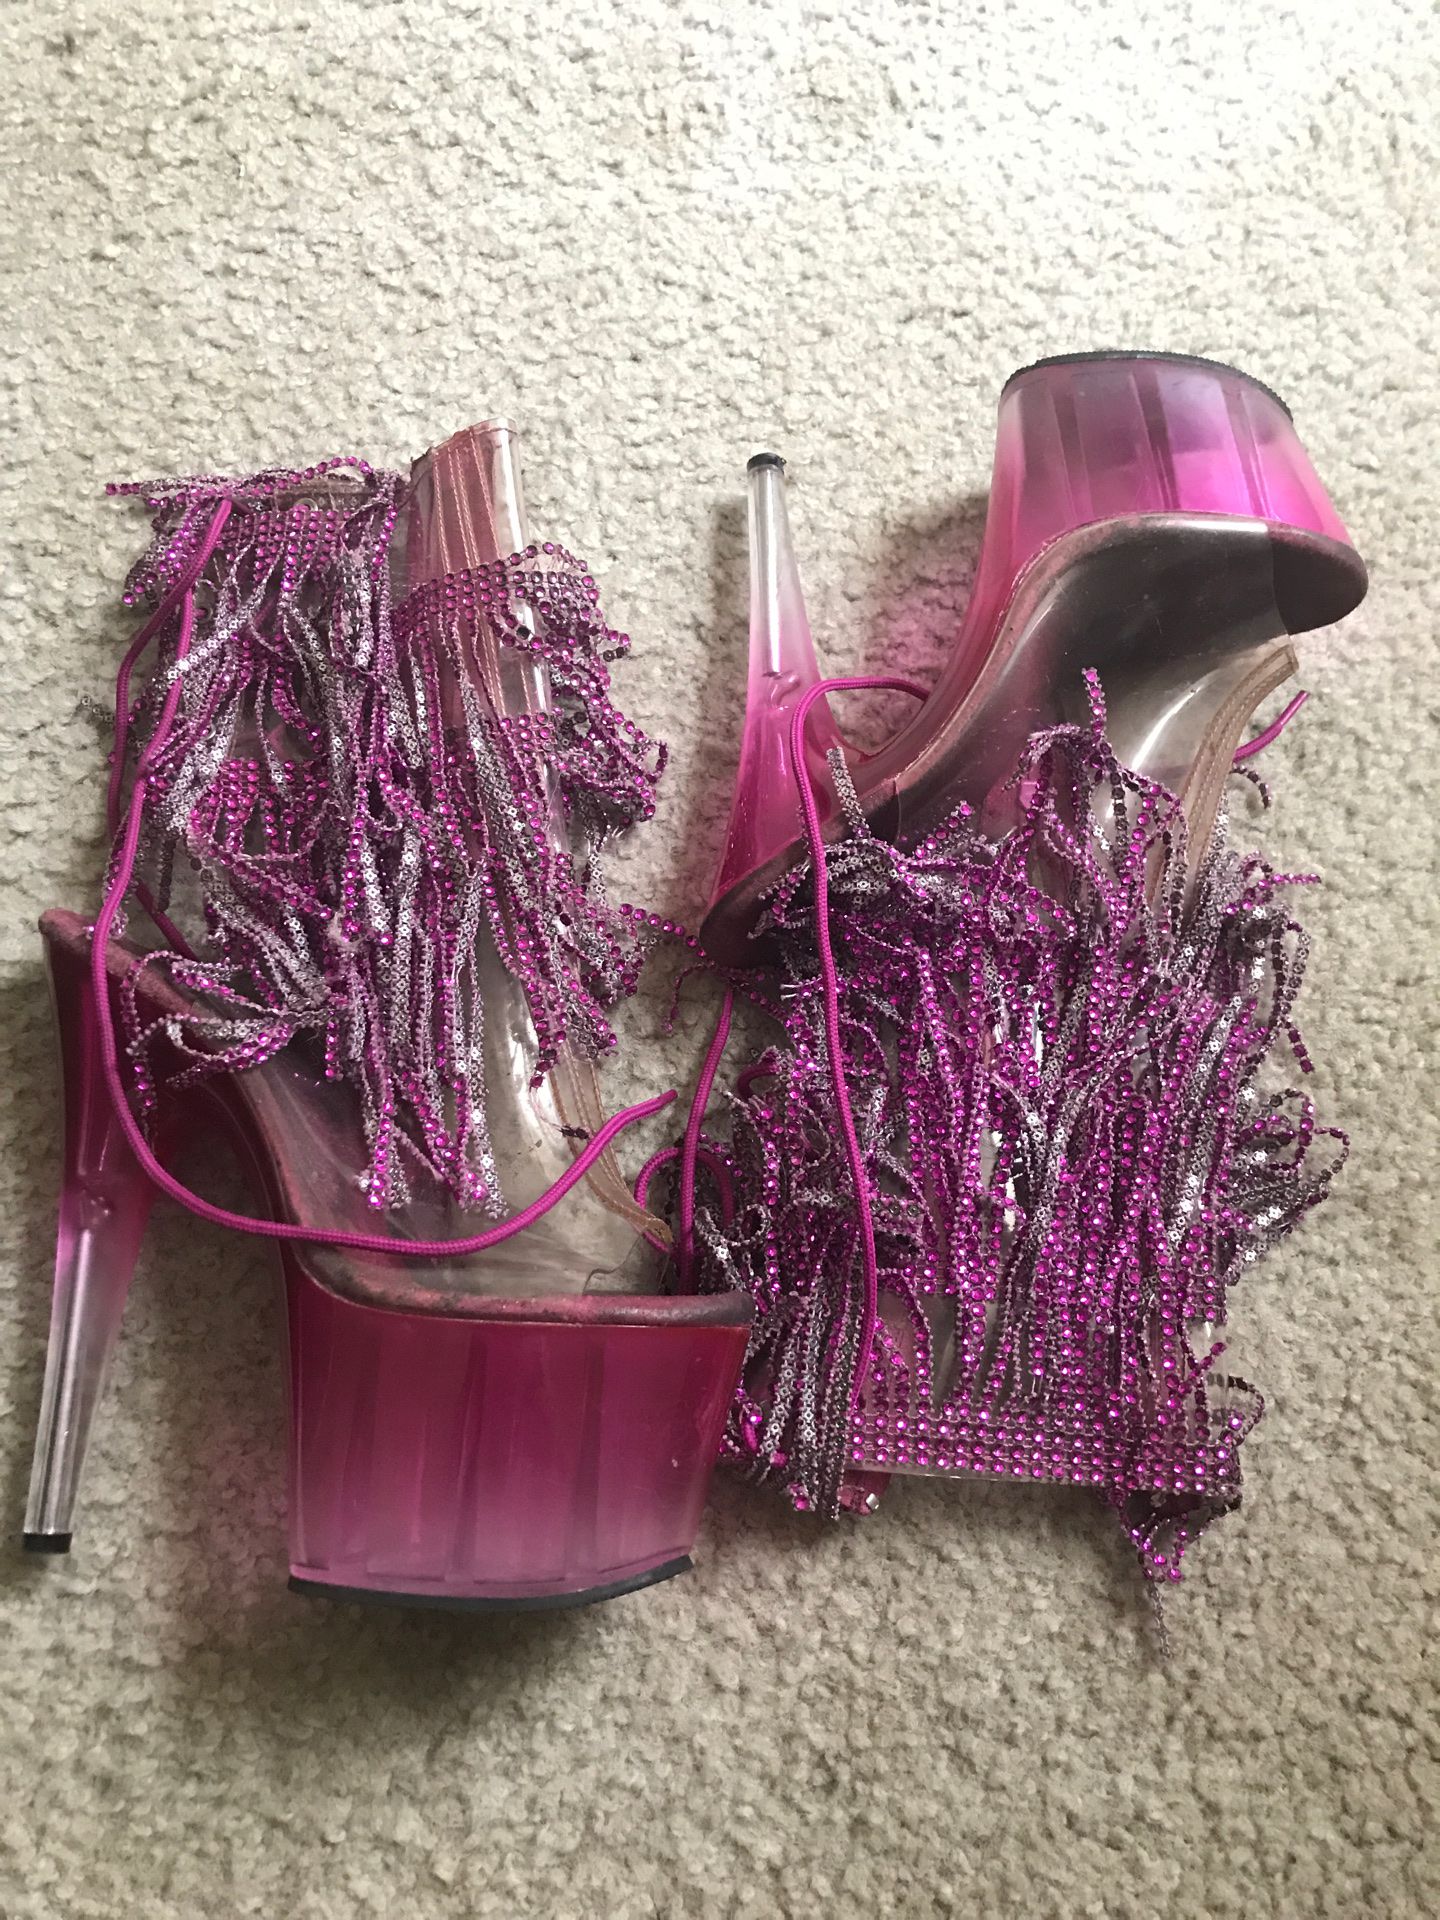 Pleaser pink fringe high heels size 9